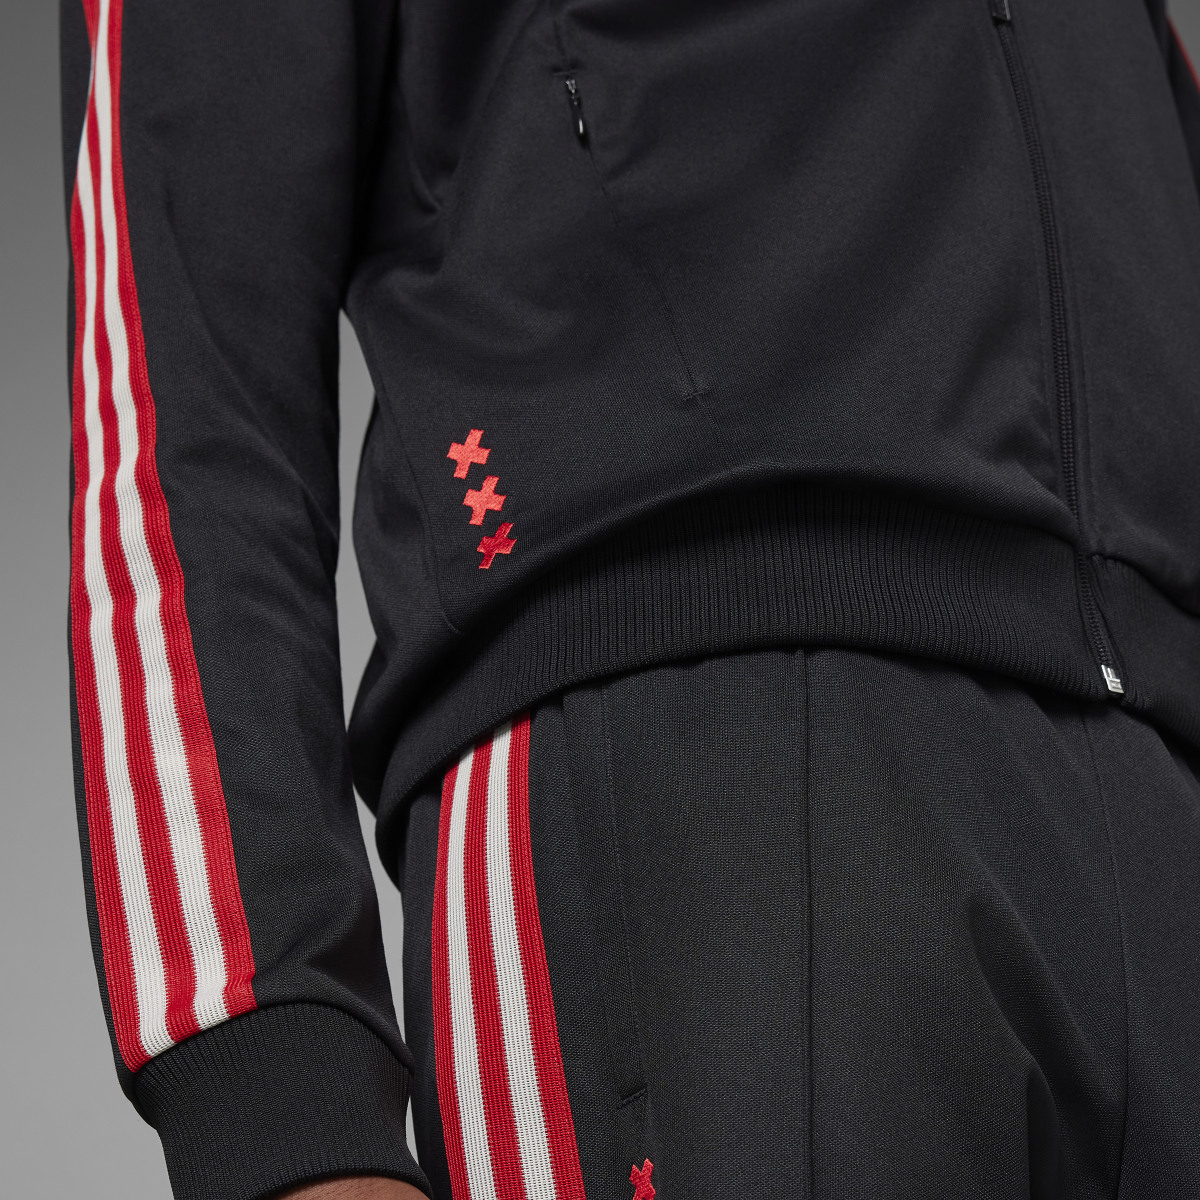 Adidas Track jacket OG Ajax Amsterdam. 8